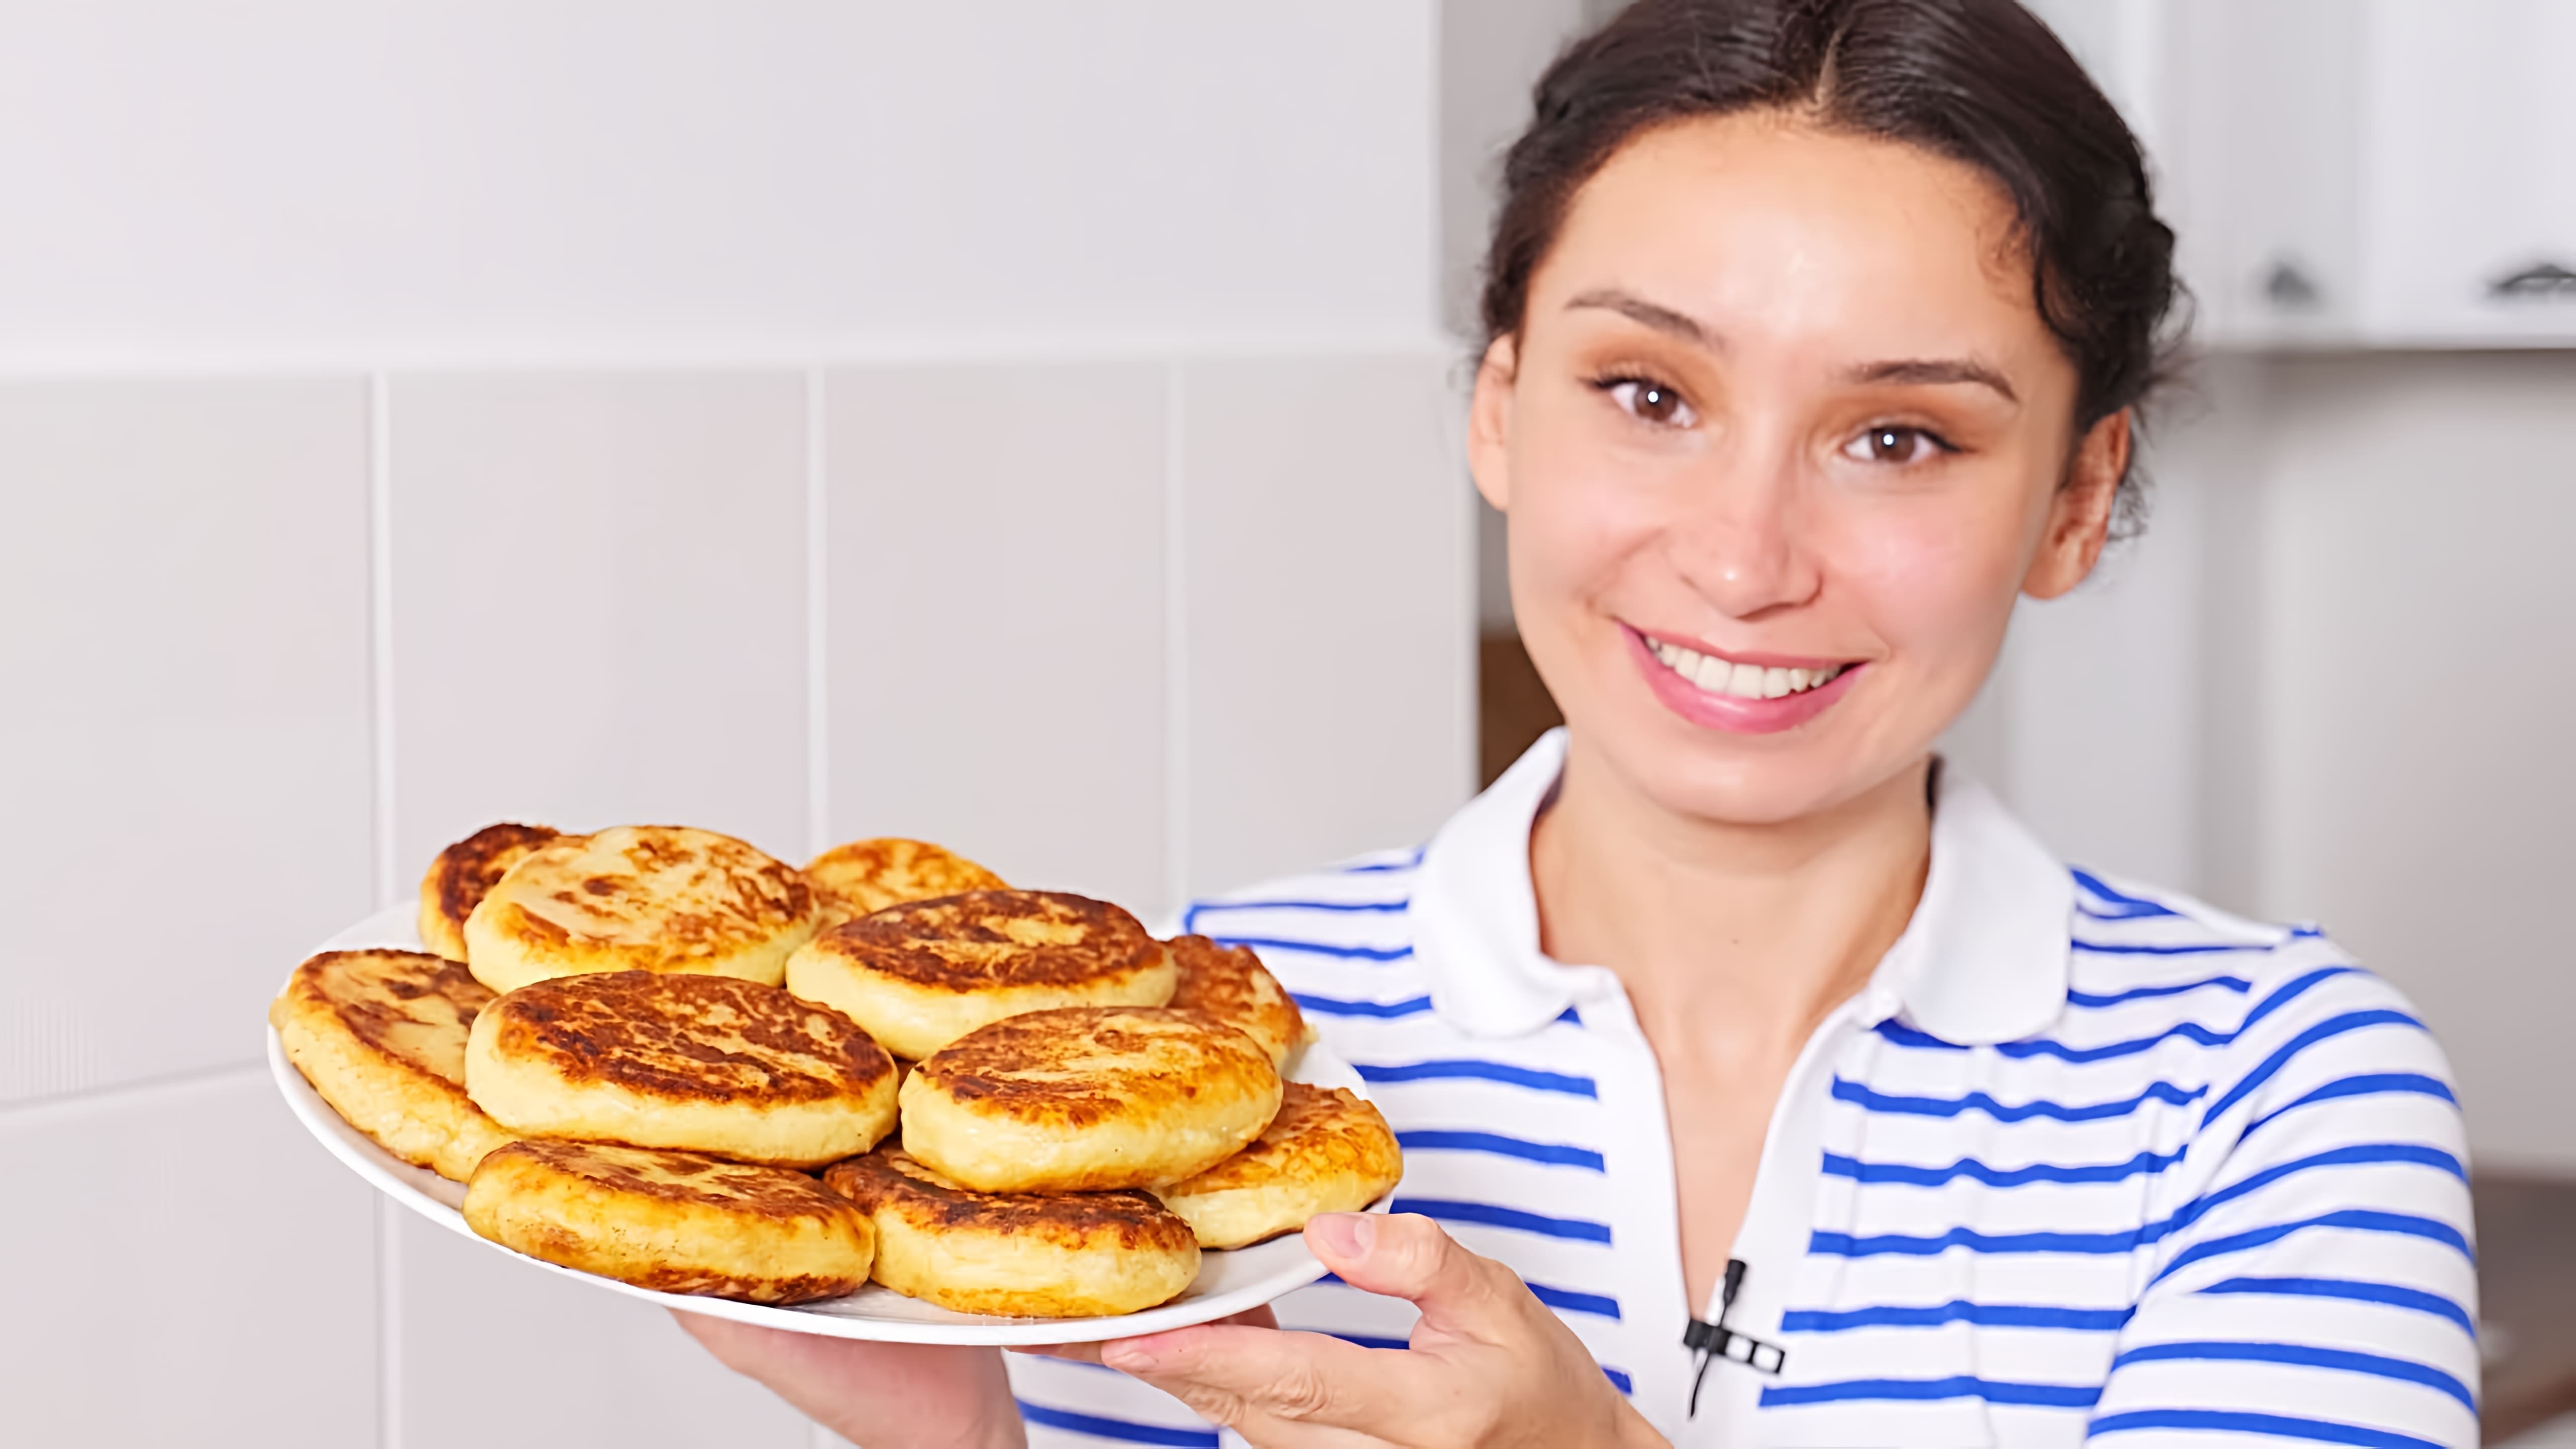 Видео рецепт приготовления зразы, которые являются картофельными и мясными пирожками, популярным блюдом в восточноевропейской кухне